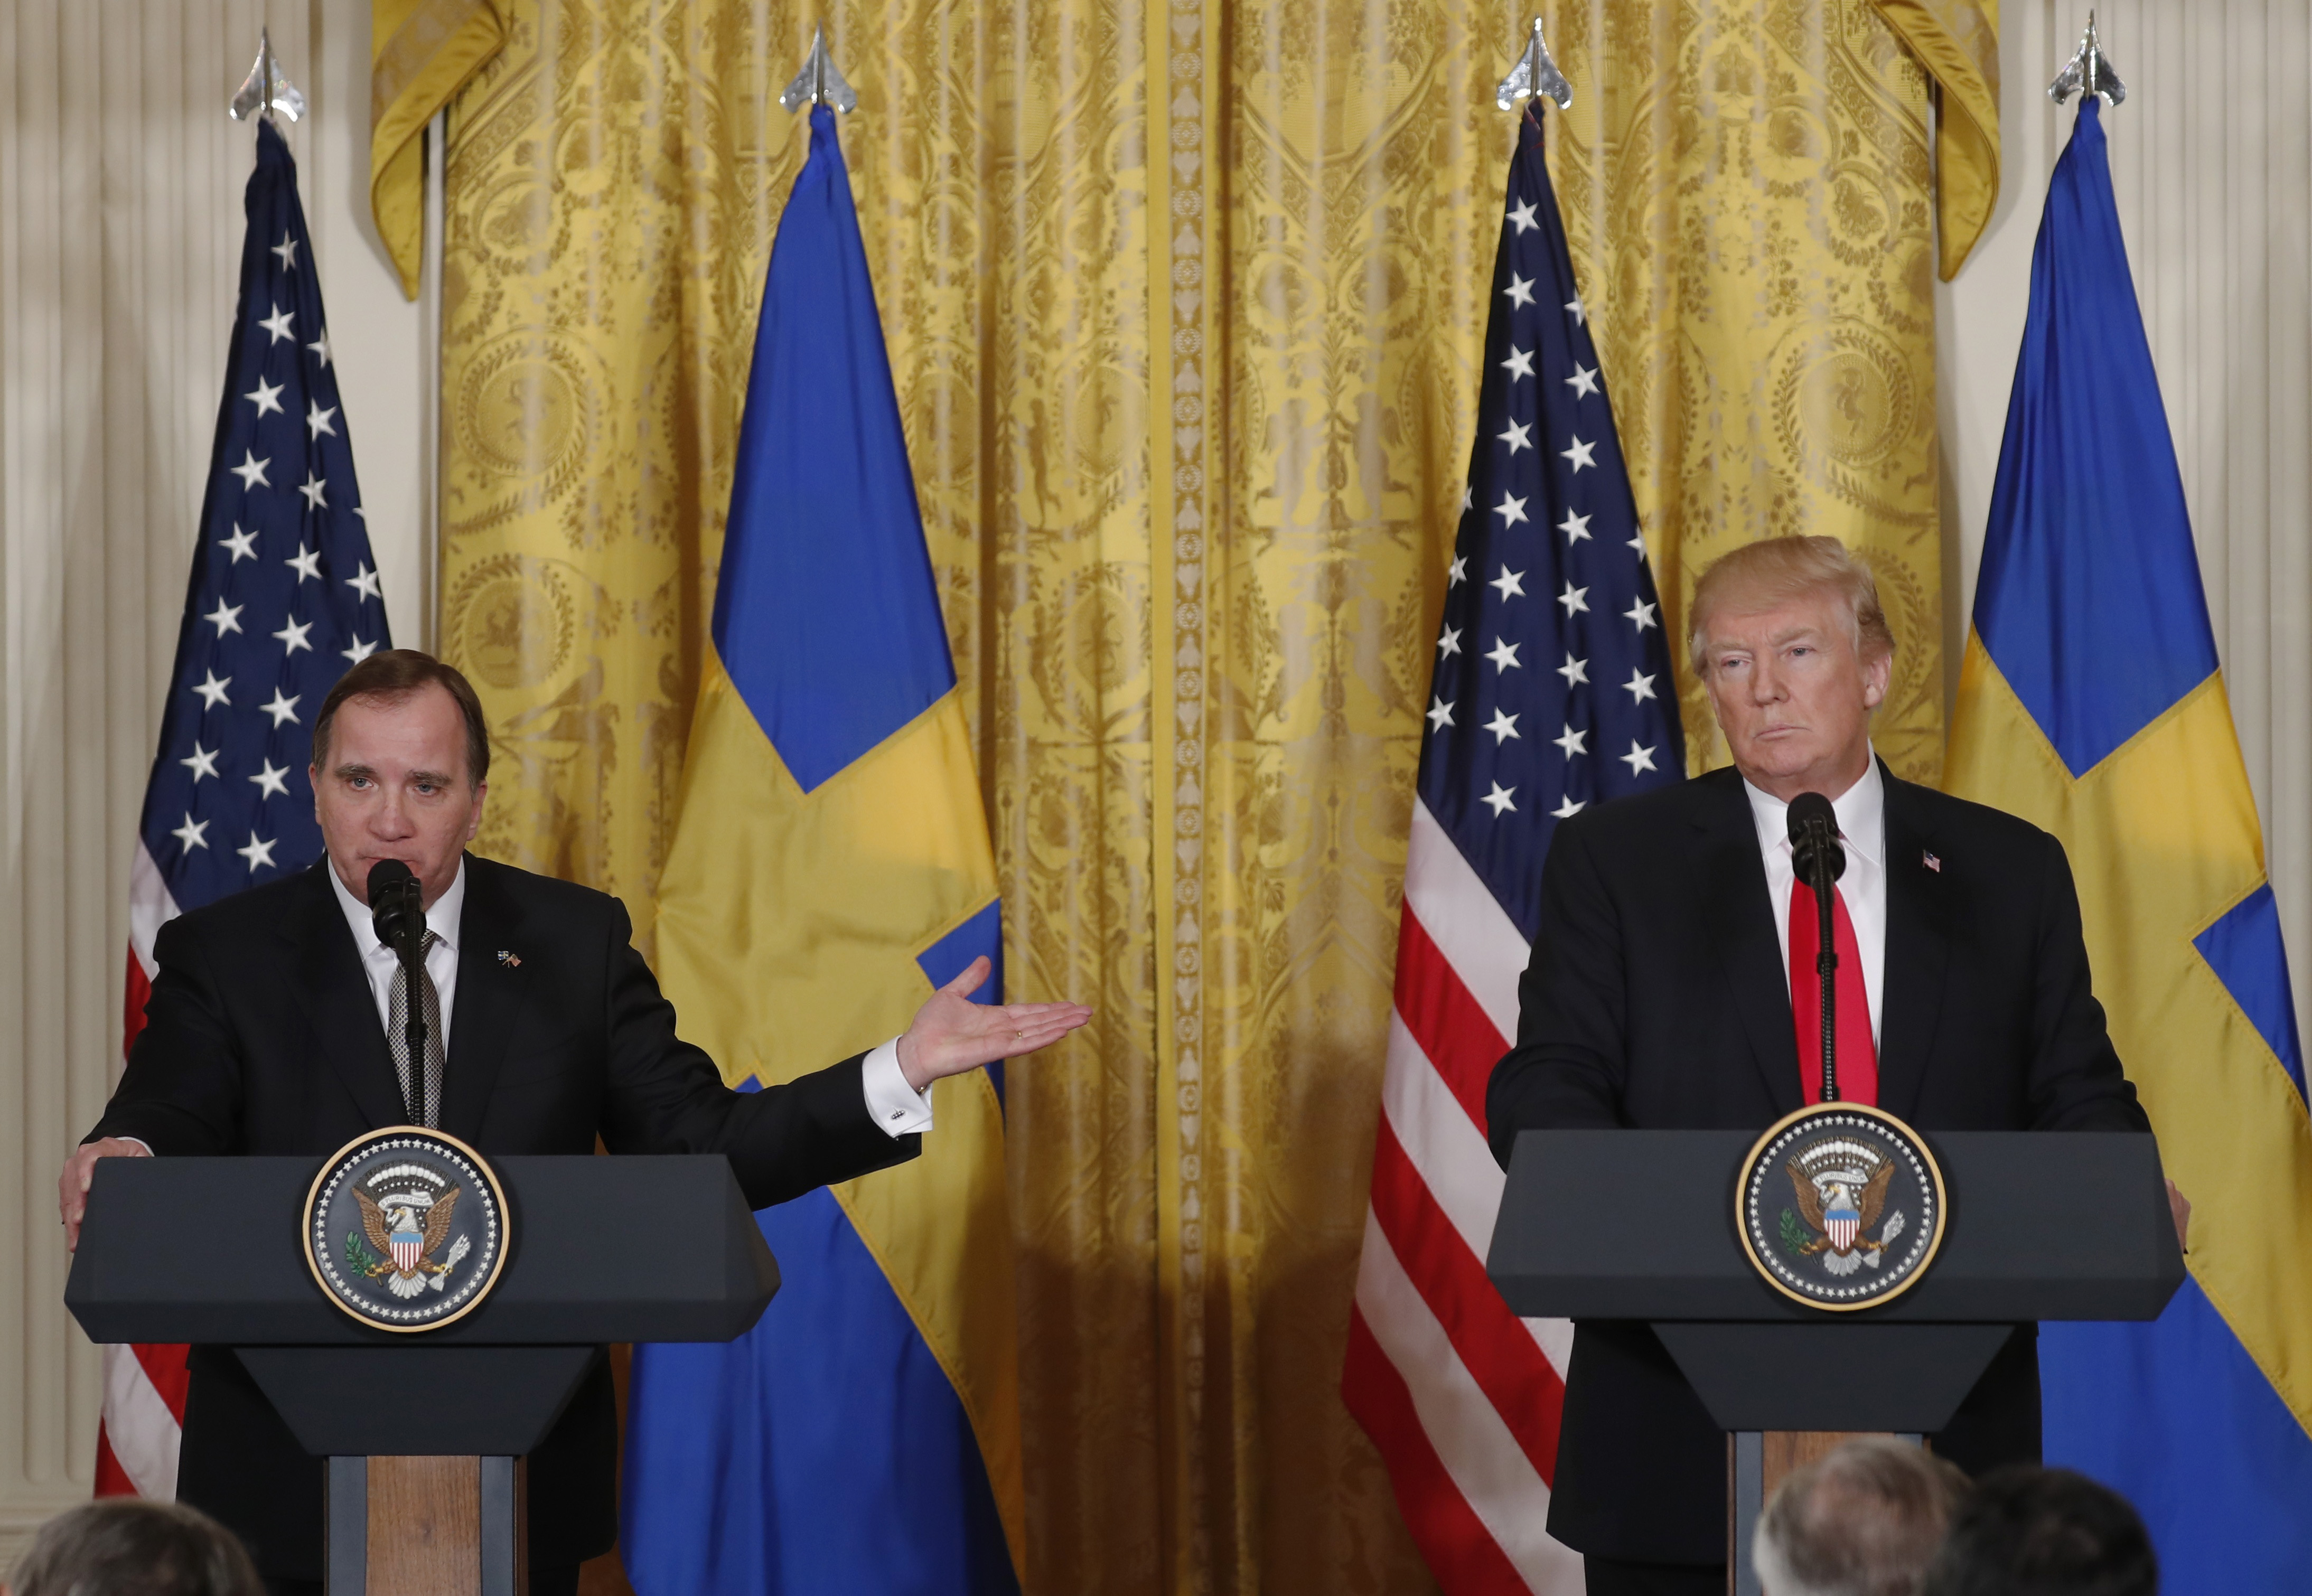 Sweden Prime Minister tells Donald Trump U.S. tariffs “will hurt us all ...